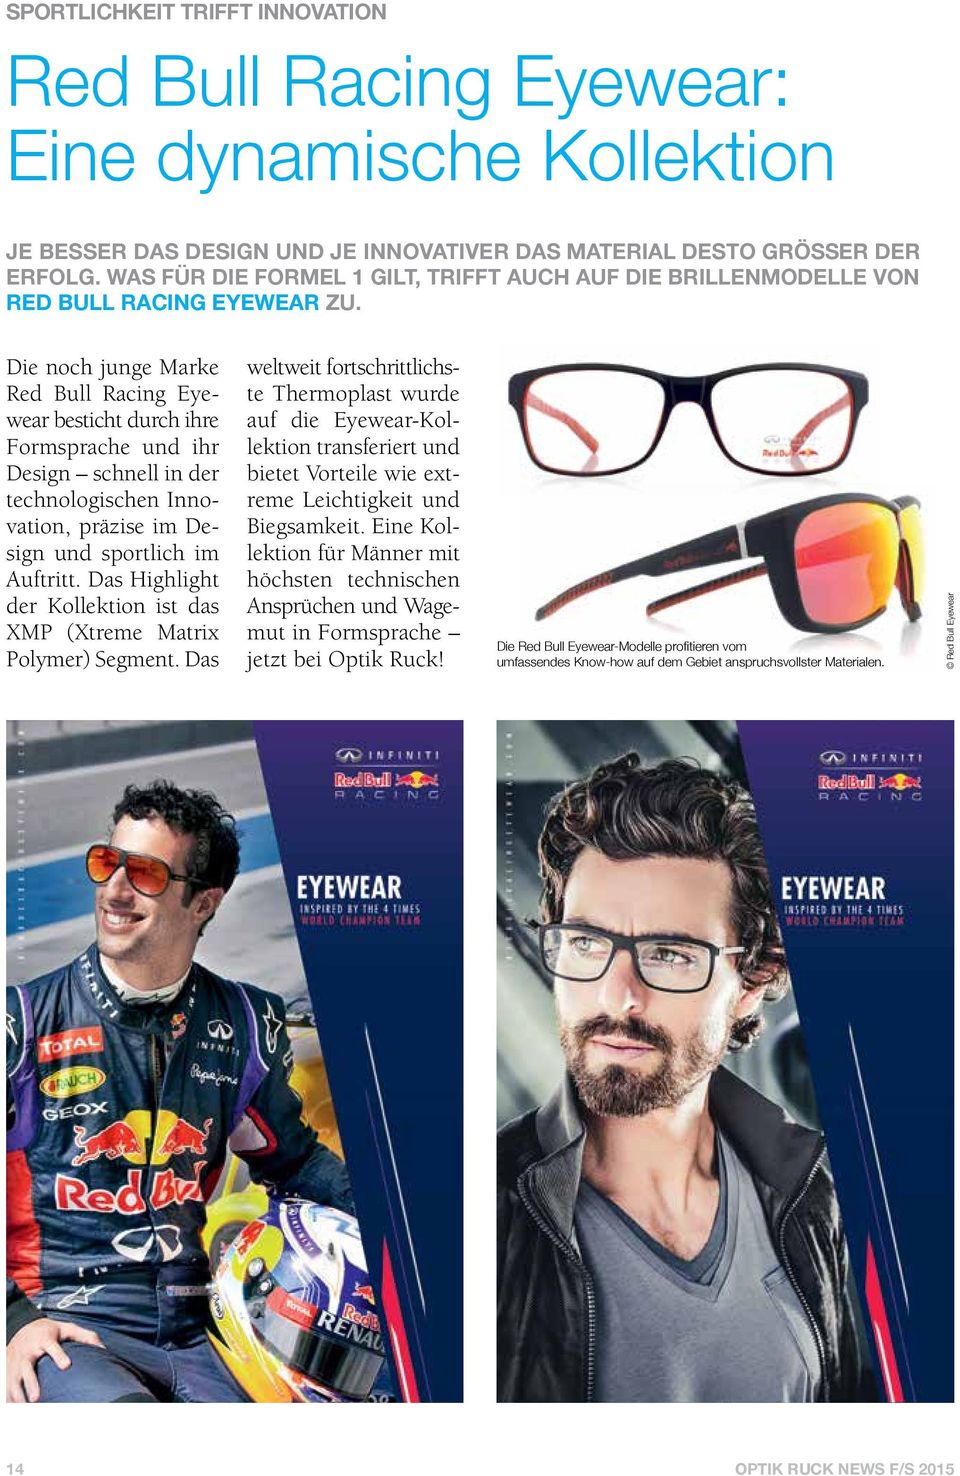 Die noch junge Marke Red Bull Racing Eyewear besticht durch ihre Formsprache und ihr Design schnell in der technologischen Innovation, präzise im Design und sportlich im Auftritt.